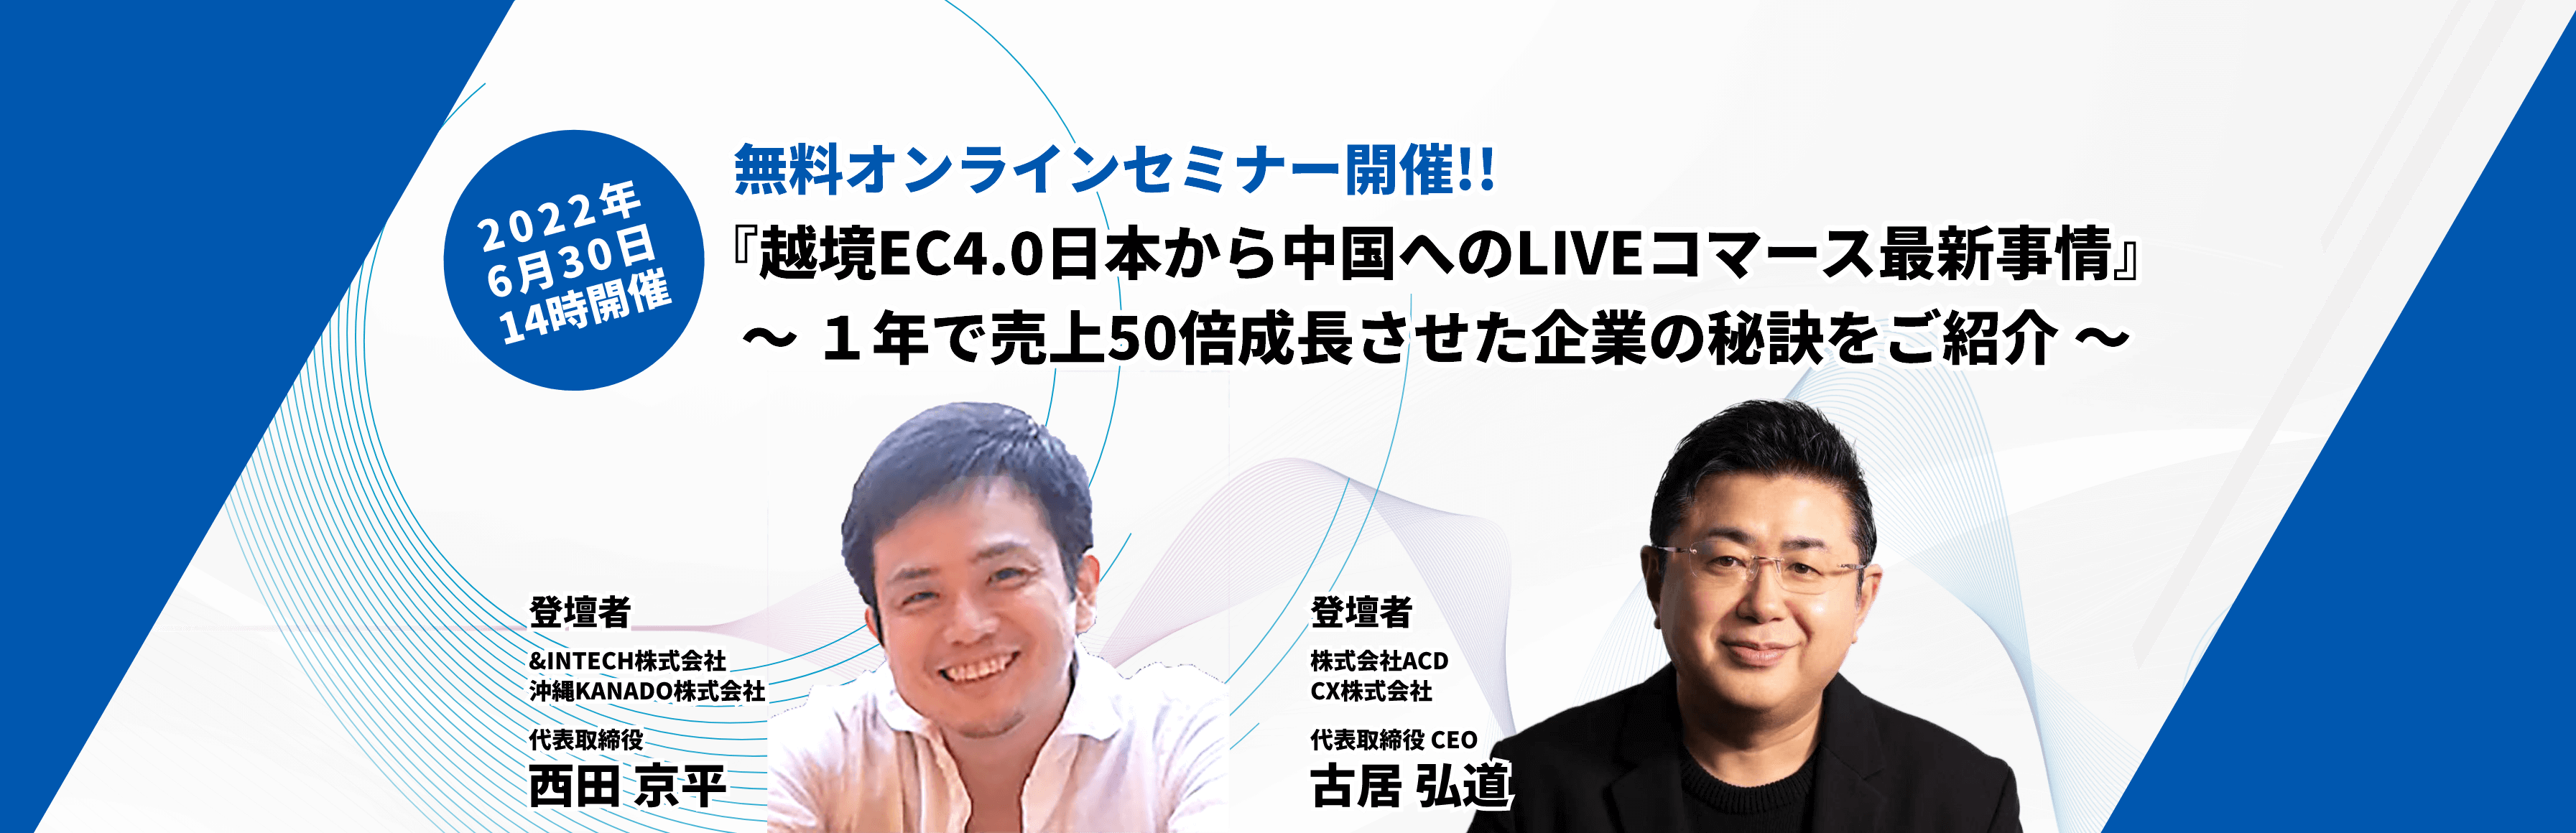 2020年6月30日14時開催 『越境EC4.0日本から中国へのLIVEコマース最新事情』〜1年で売上50倍成長させた企業の秘訣をご紹介〜